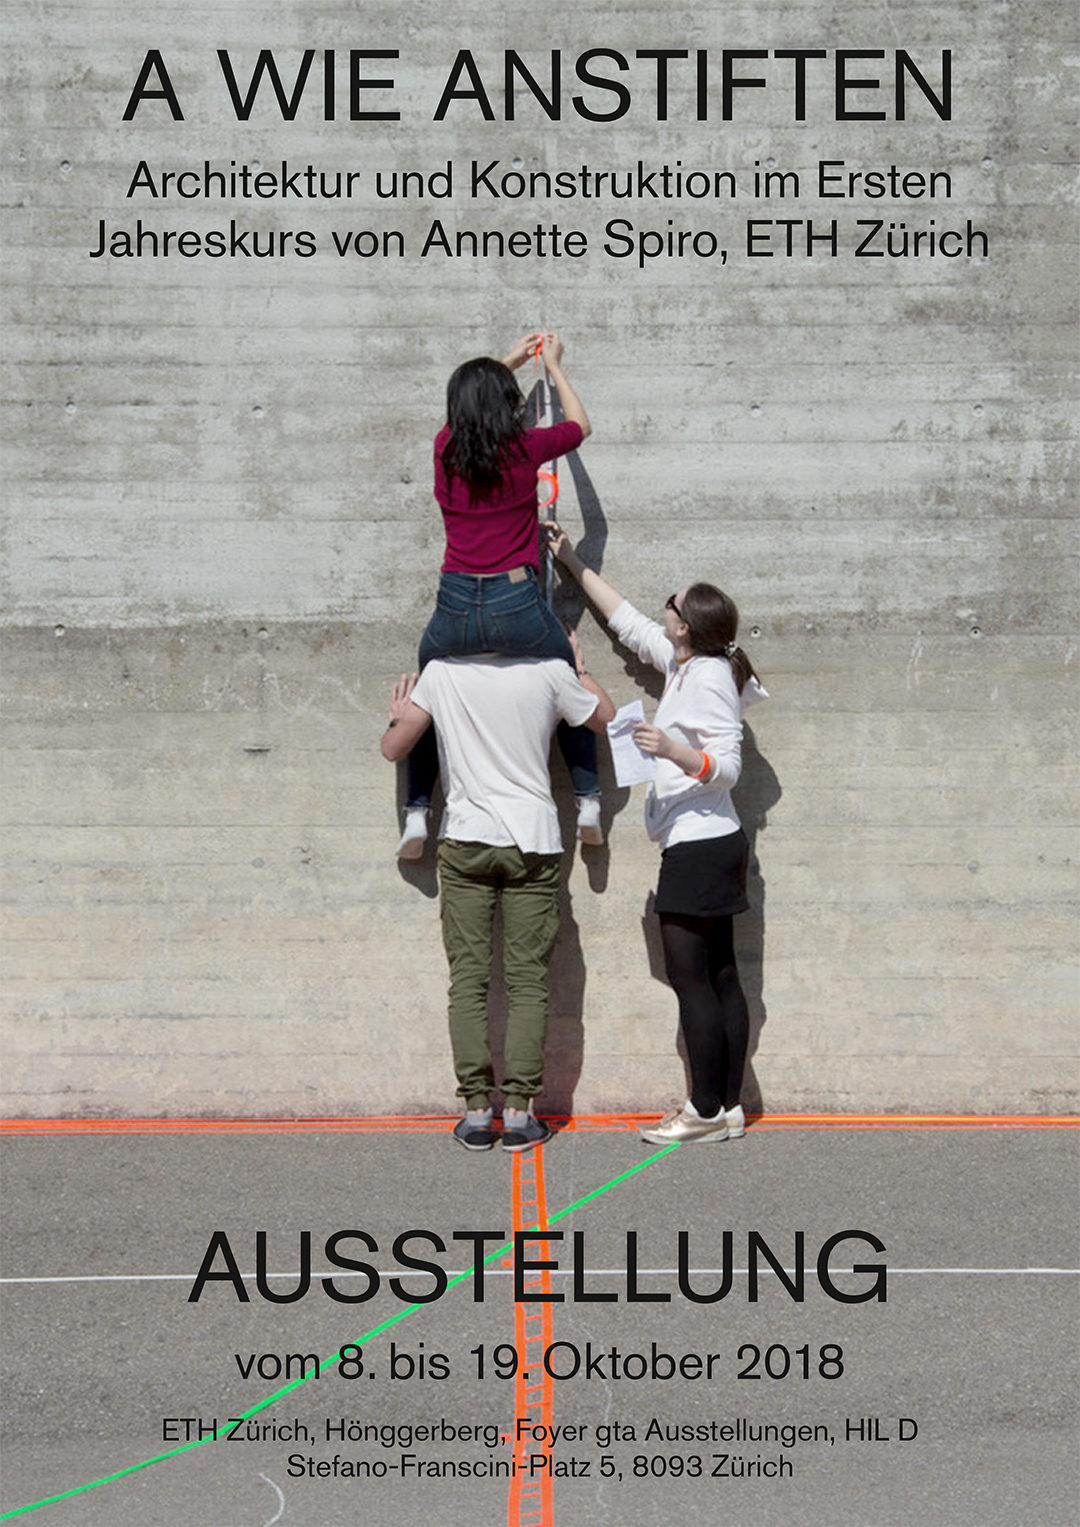 A wie Anstiften. Architektur und Konstruktion im Ersten Jahreskurs von Annette Spiro, ETH Zürich